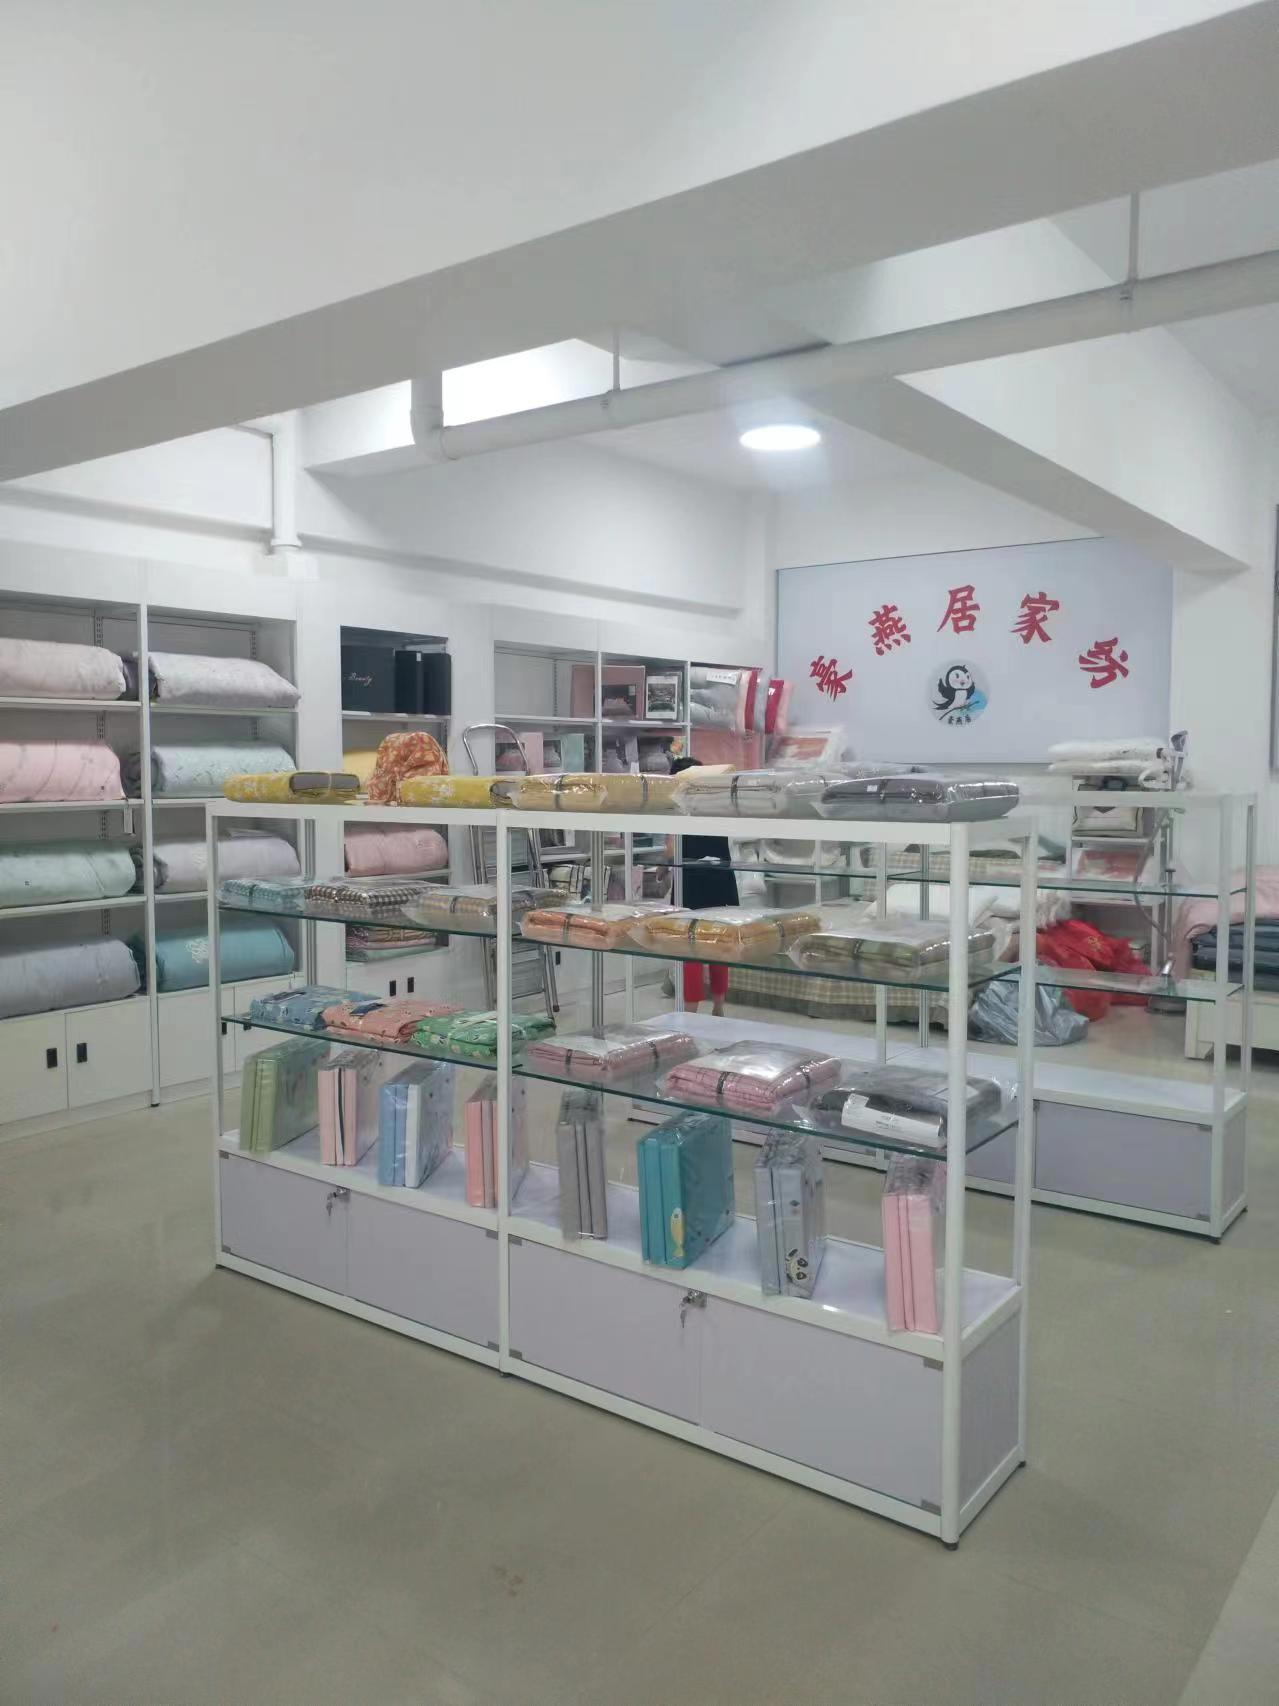 供应新乡床上用品家纺展示柜 店铺设计展柜货架制作 牢固耐用环保